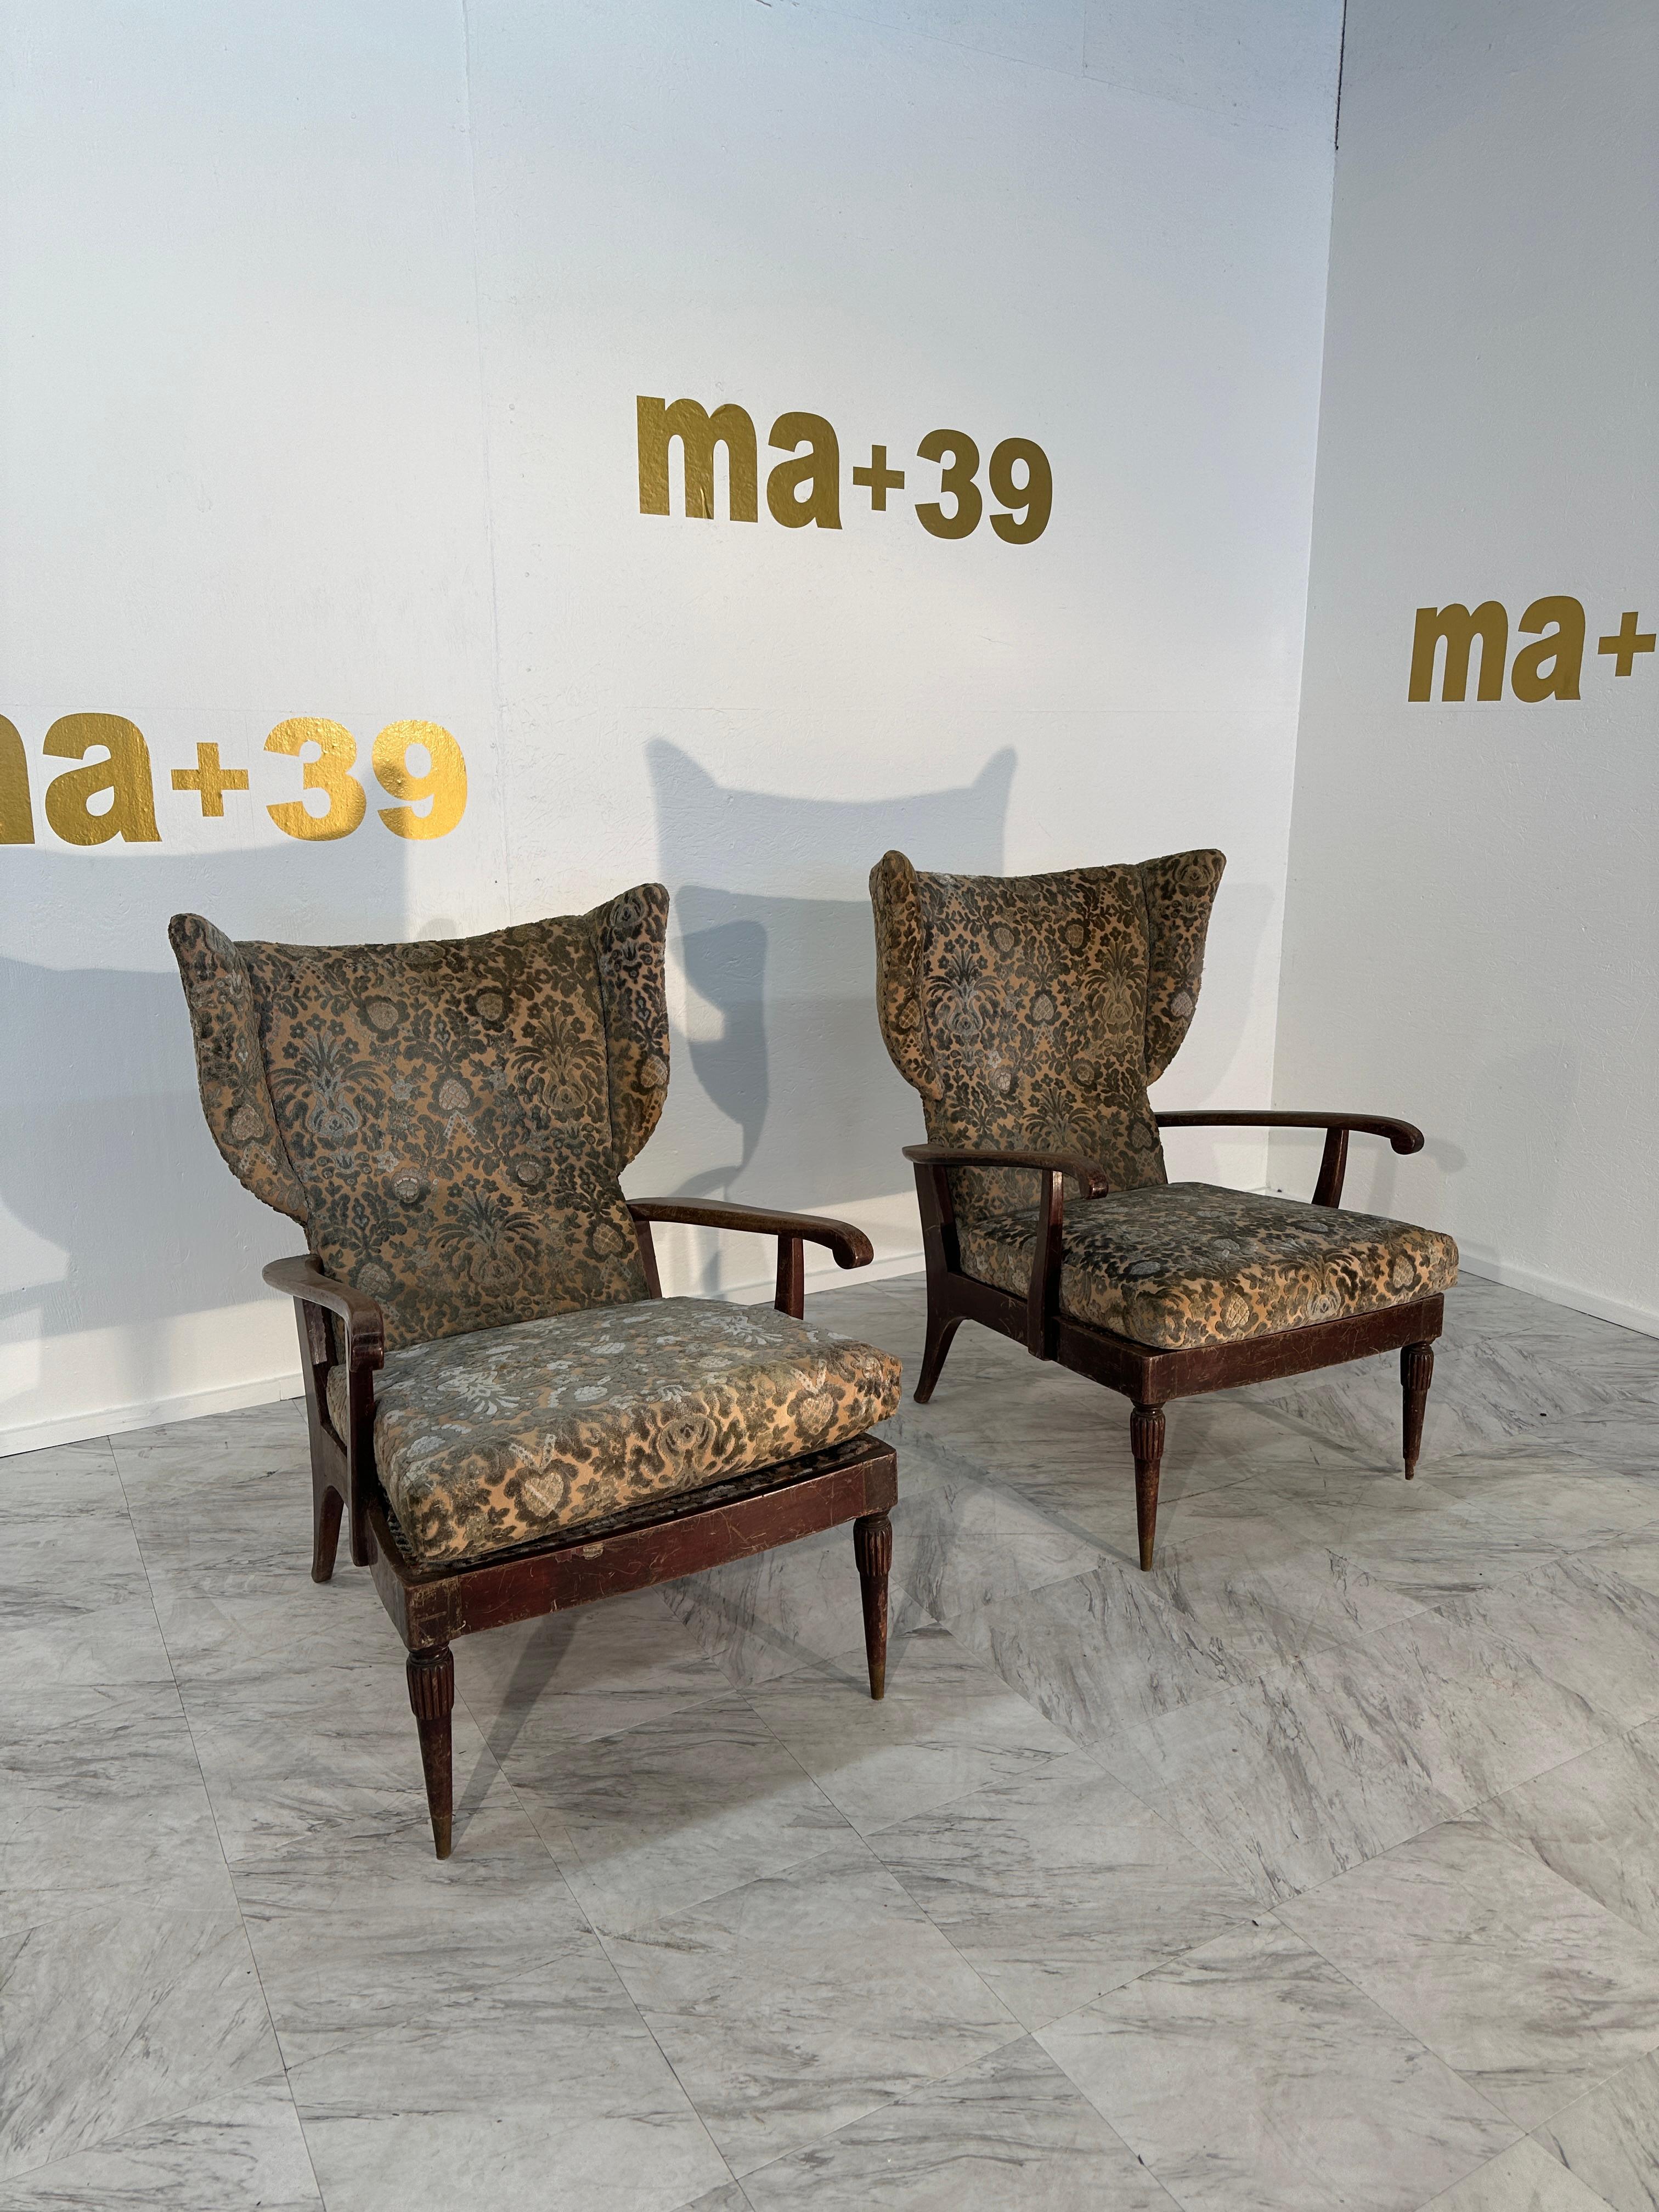 Das Paar Rückenlehnensessel von Paolo Buffa aus dem Jahr 1950 ist ein Höhepunkt der Eleganz des Designs der Jahrhundertmitte. Diese mit viel Liebe zum Detail gefertigten Sessel haben eine Wingback-Silhouette, die sowohl Komfort als auch Raffinesse